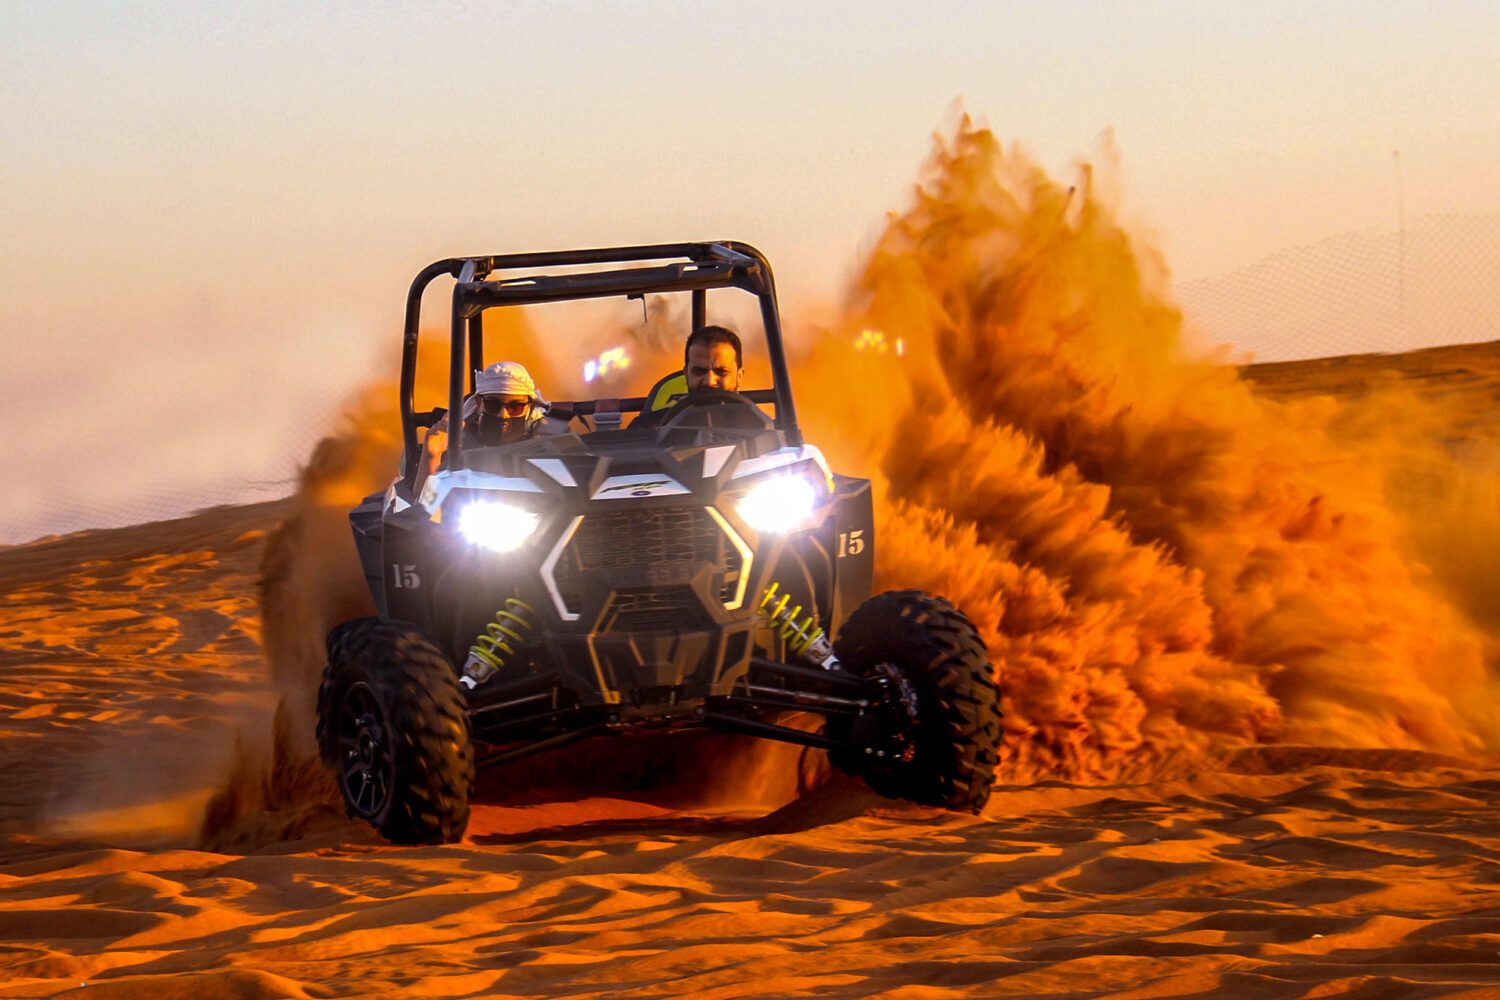 dune-buggy-desert-safari